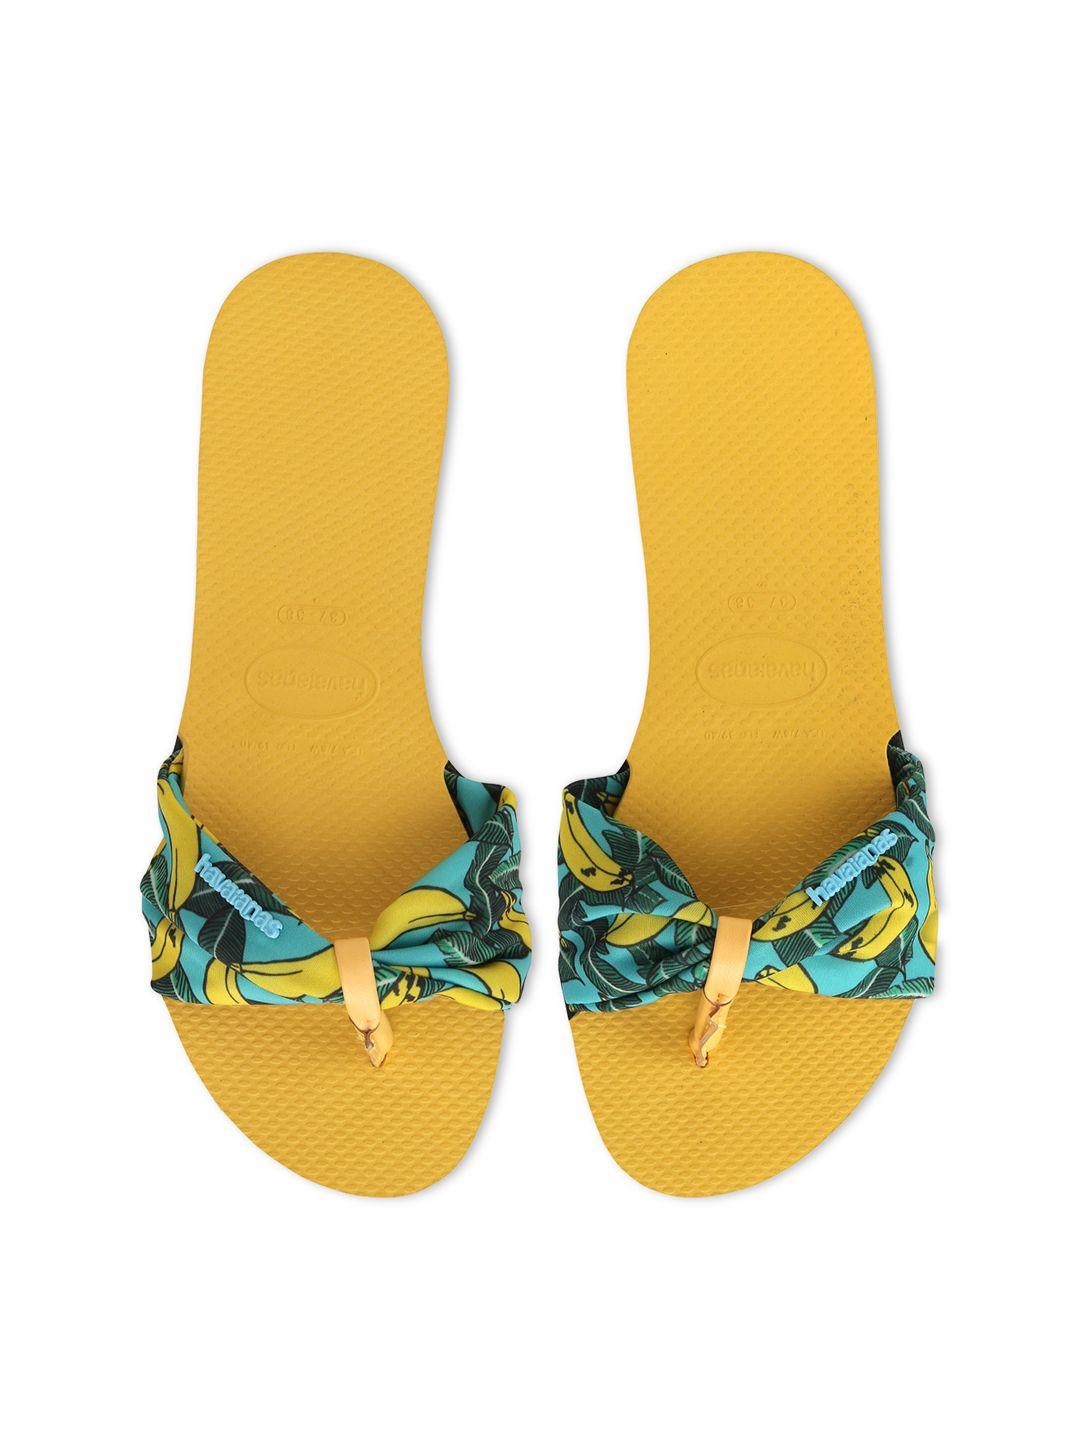 havaianas women yellow printed flip flops